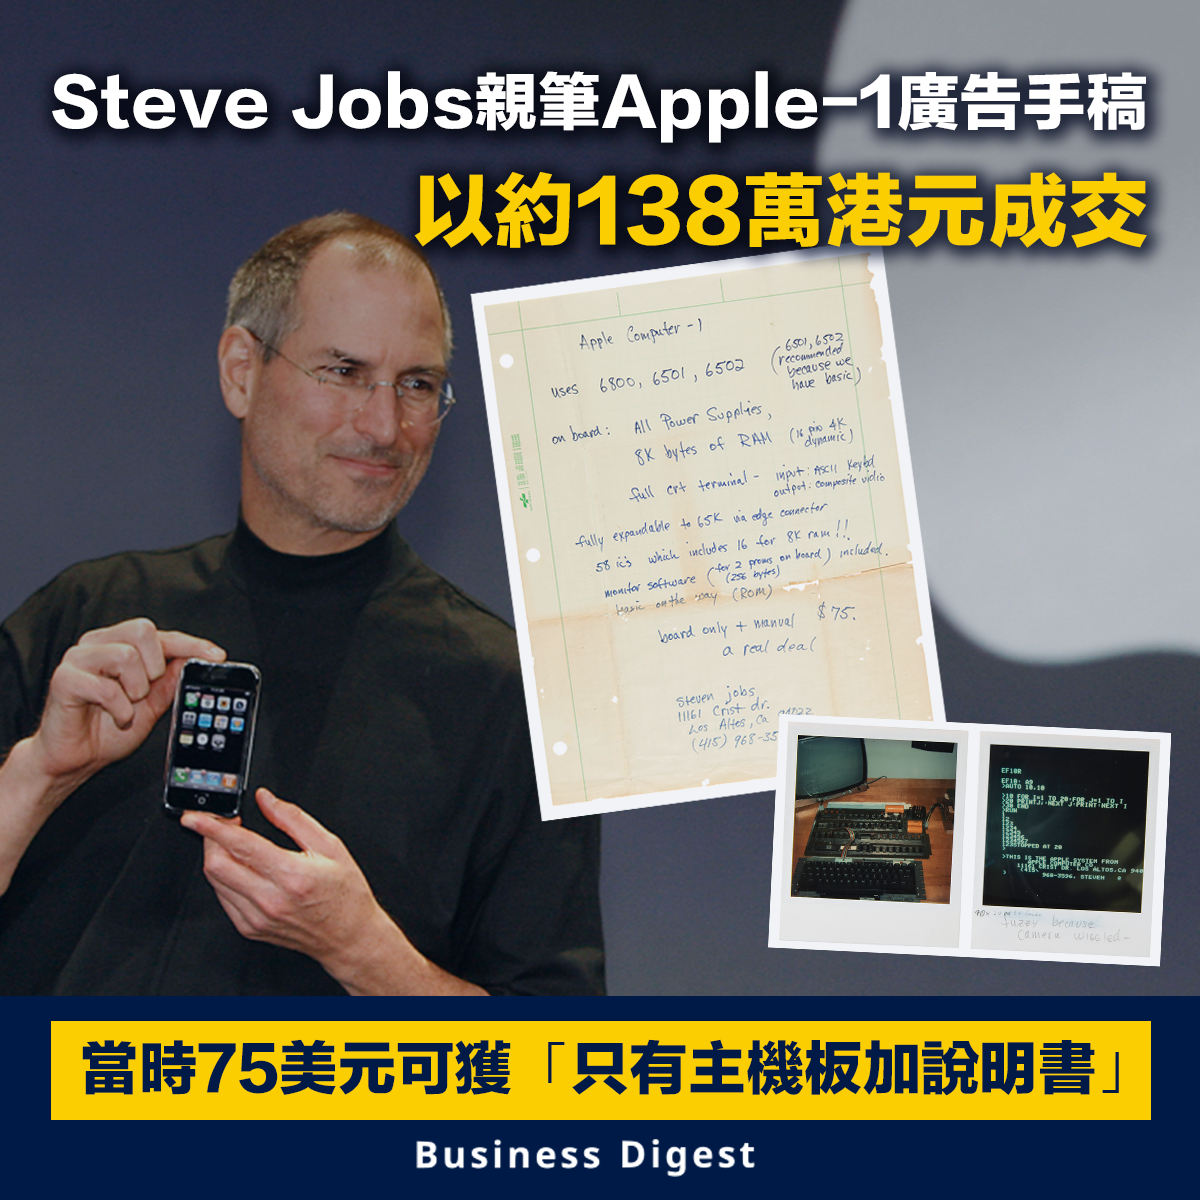 【天價手稿】Steve Jobs親筆Apple-1廣告手稿 以約138萬港元成交